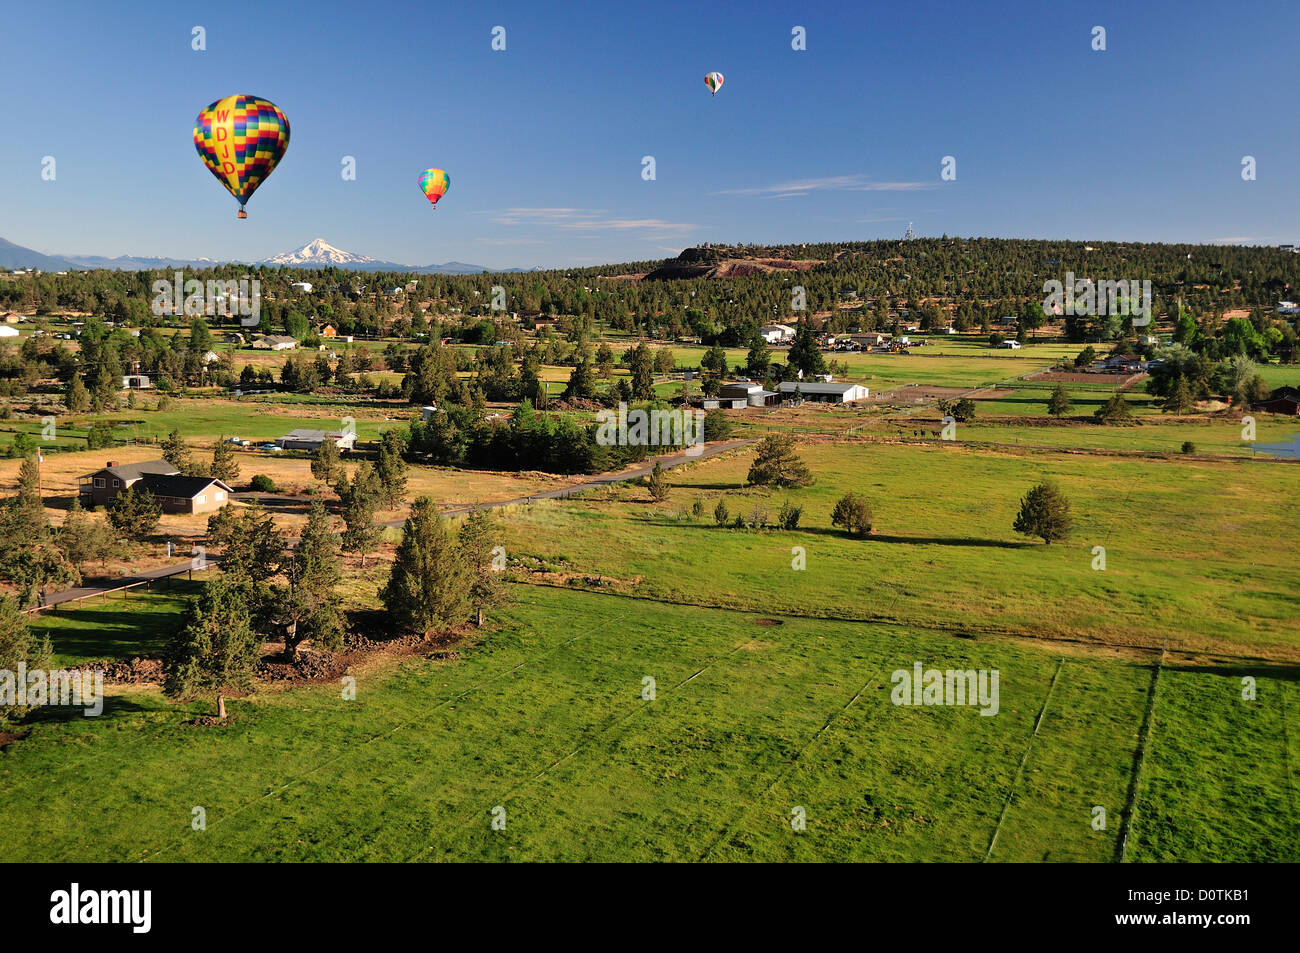 Landschaft, grün, Weide, Mount Jefferson, Luftballons, heiße Luft, Bend, Oregon, USA, USA, Amerika, Nordamerika, Länder Stockfoto